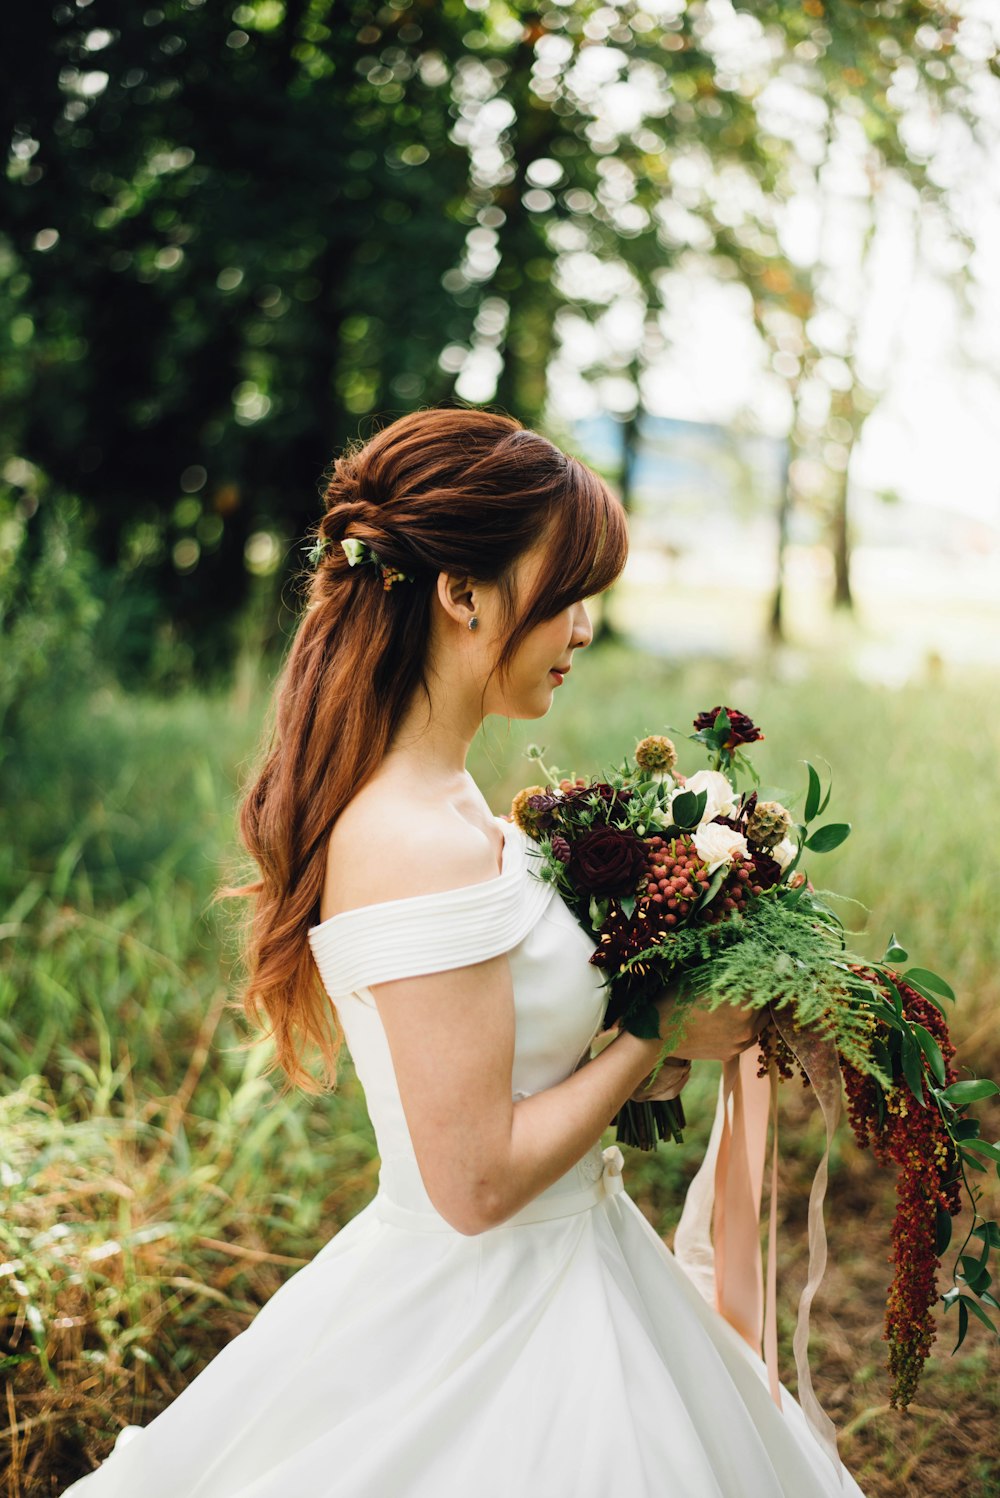 mujer con un vestido de novia blanco con hombros descubiertos con una flor blanca de pétalos